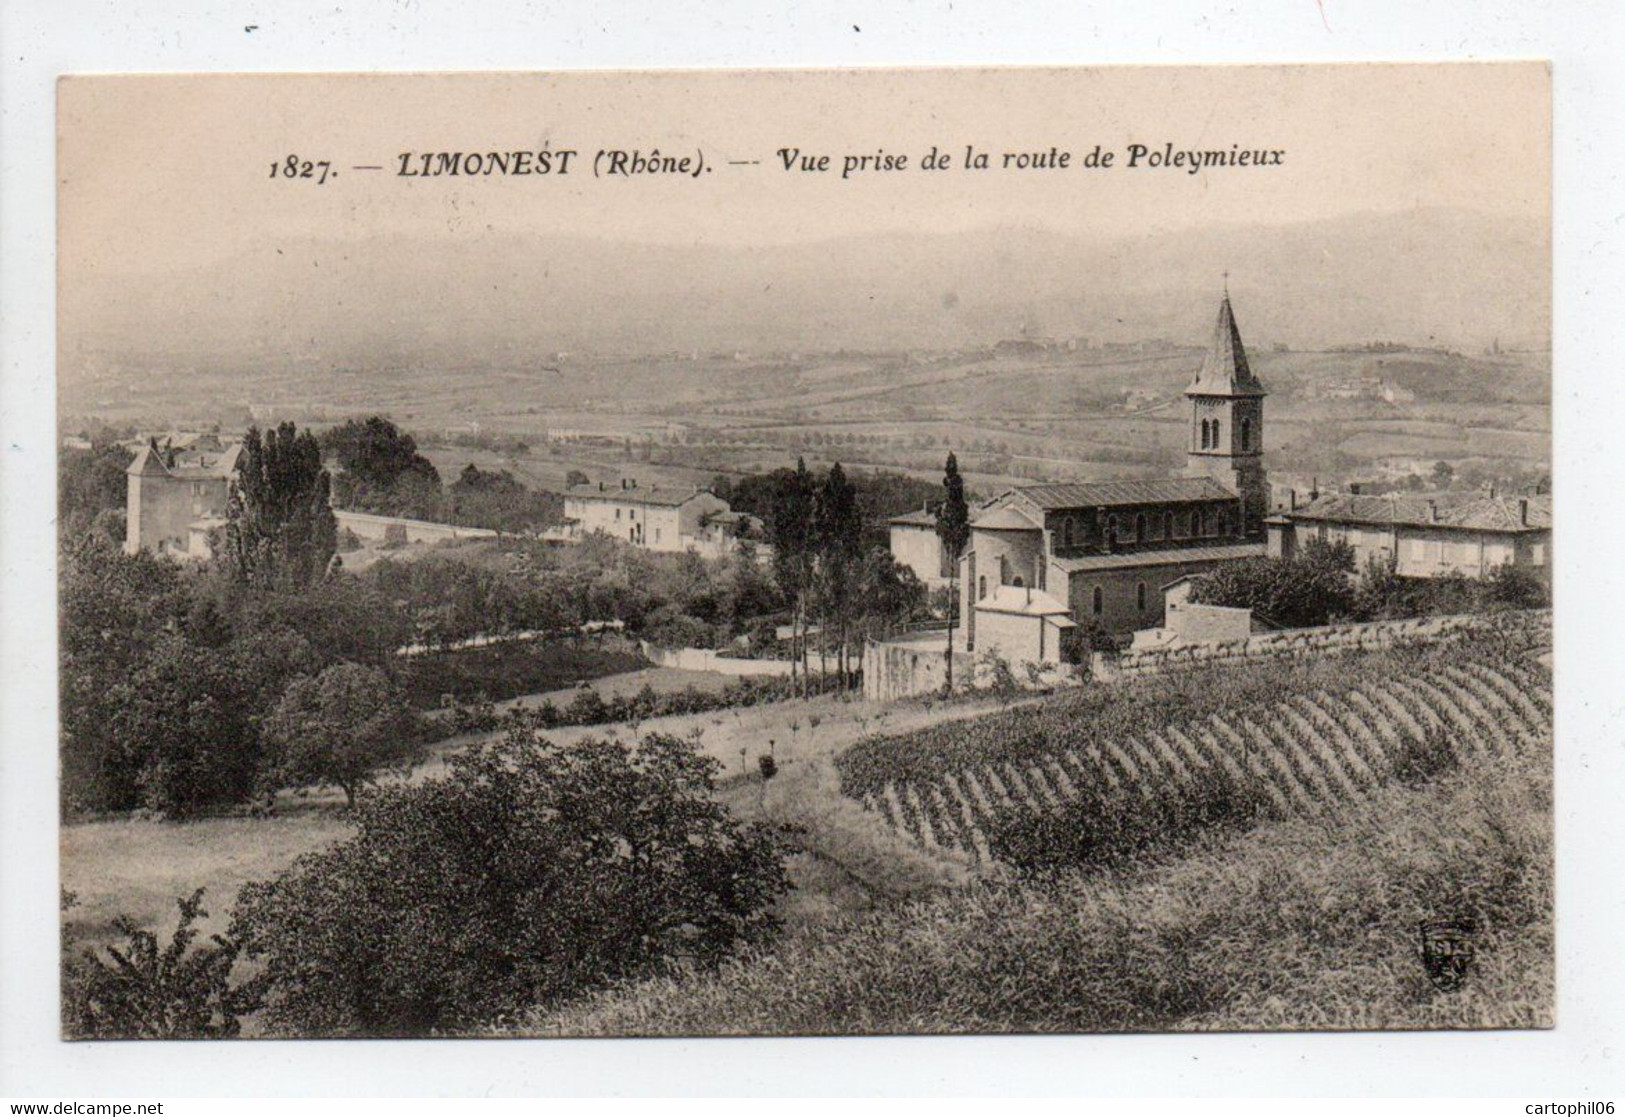 - CPA LIMONEST (69) - Vue Prise De La Route De Poleymieux 1907 - Edition Farges 1827 - - Limonest